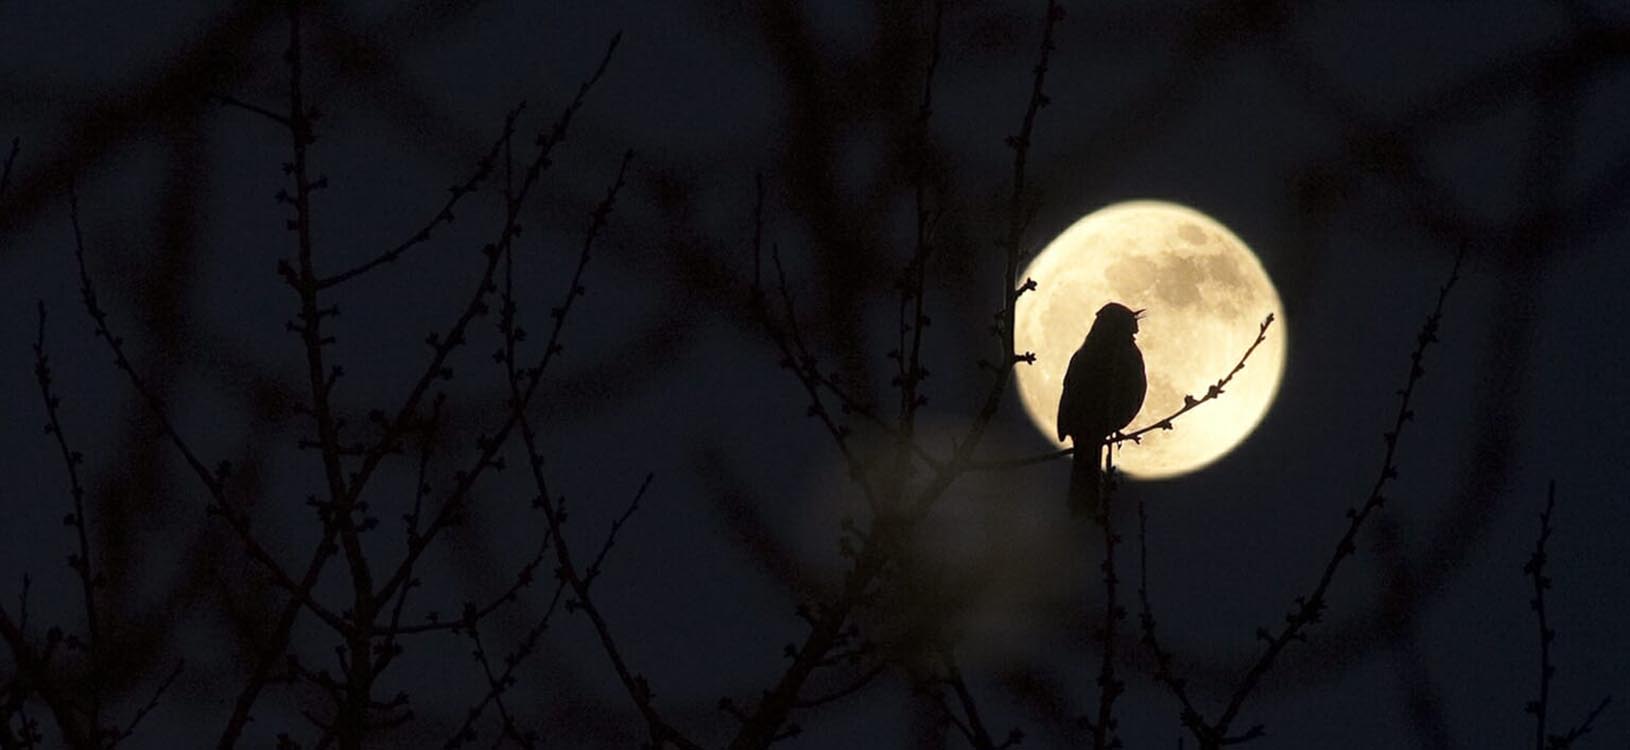 Birdwatching at night